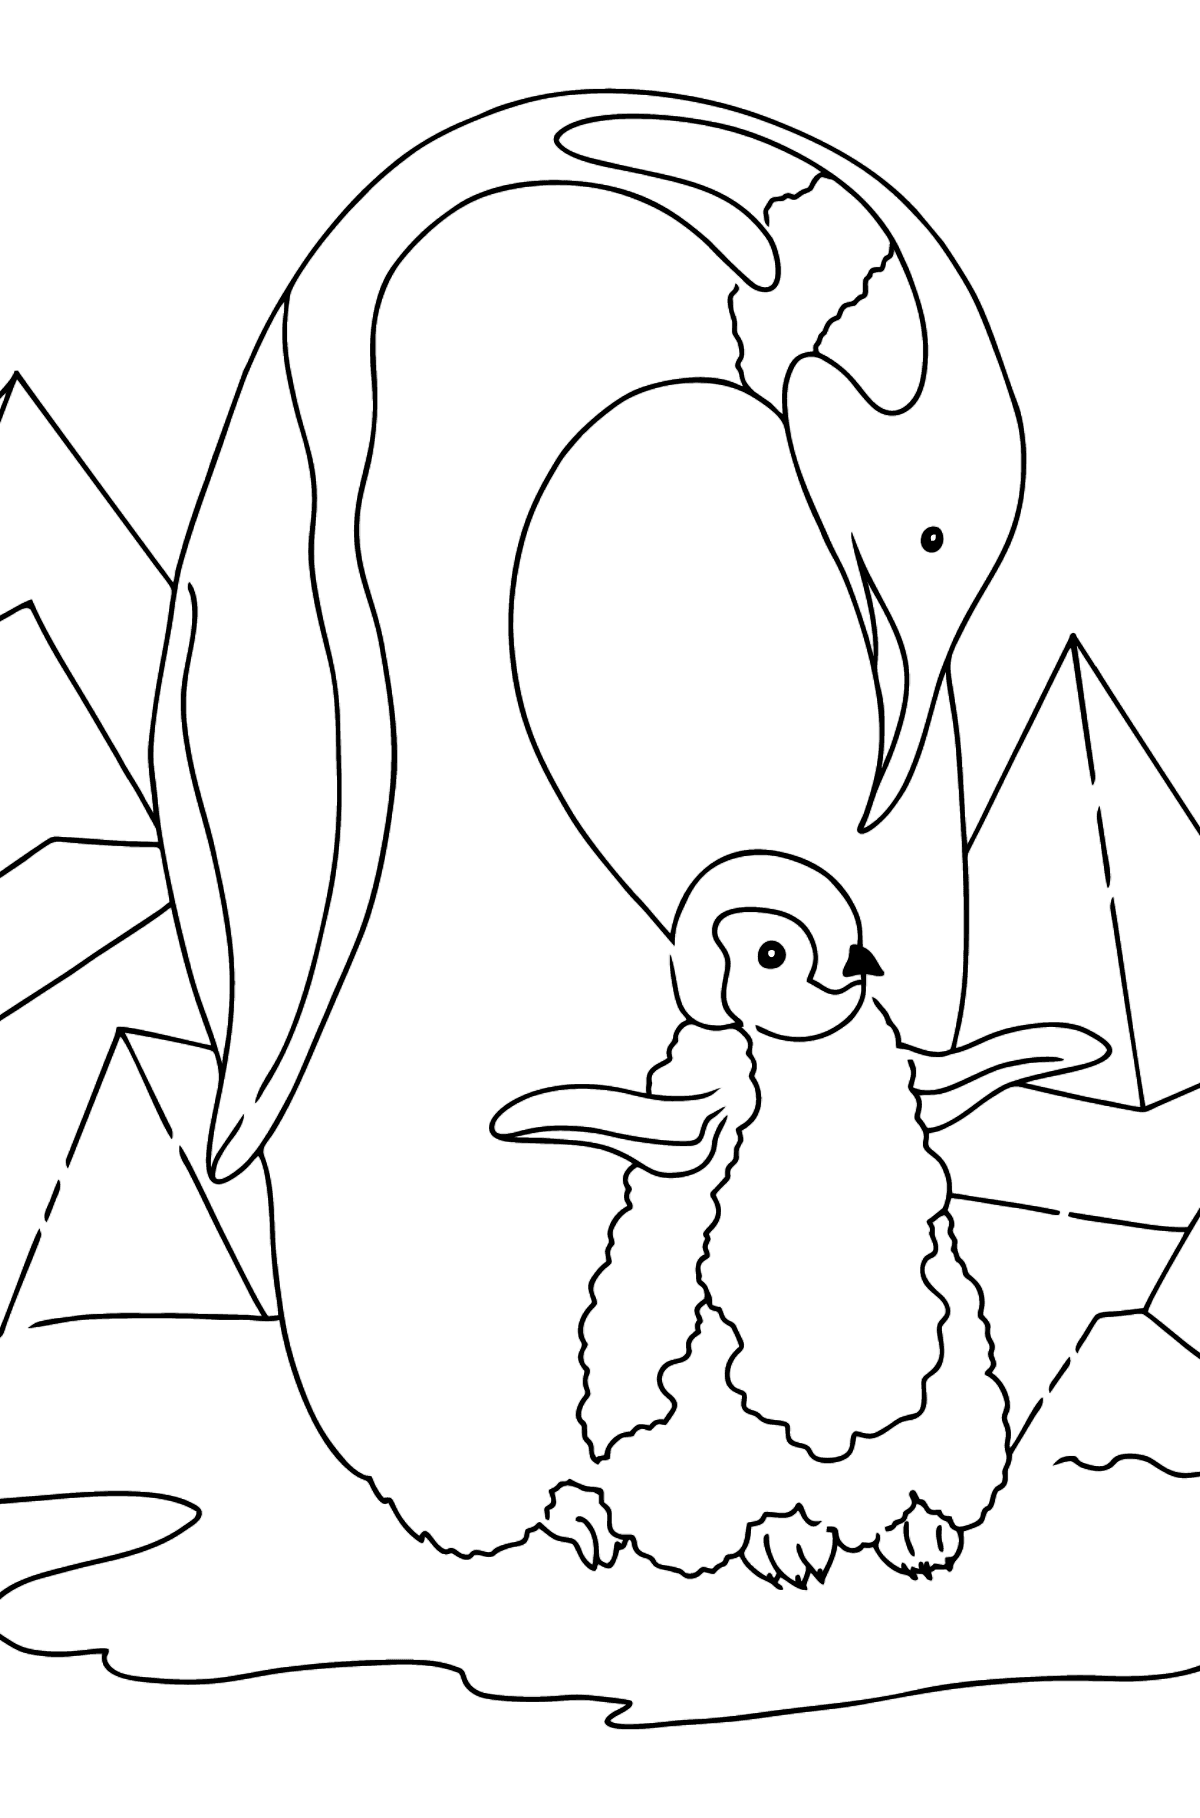 Coloriage - Un pingouin bienveillant - Coloriages pour les Enfants